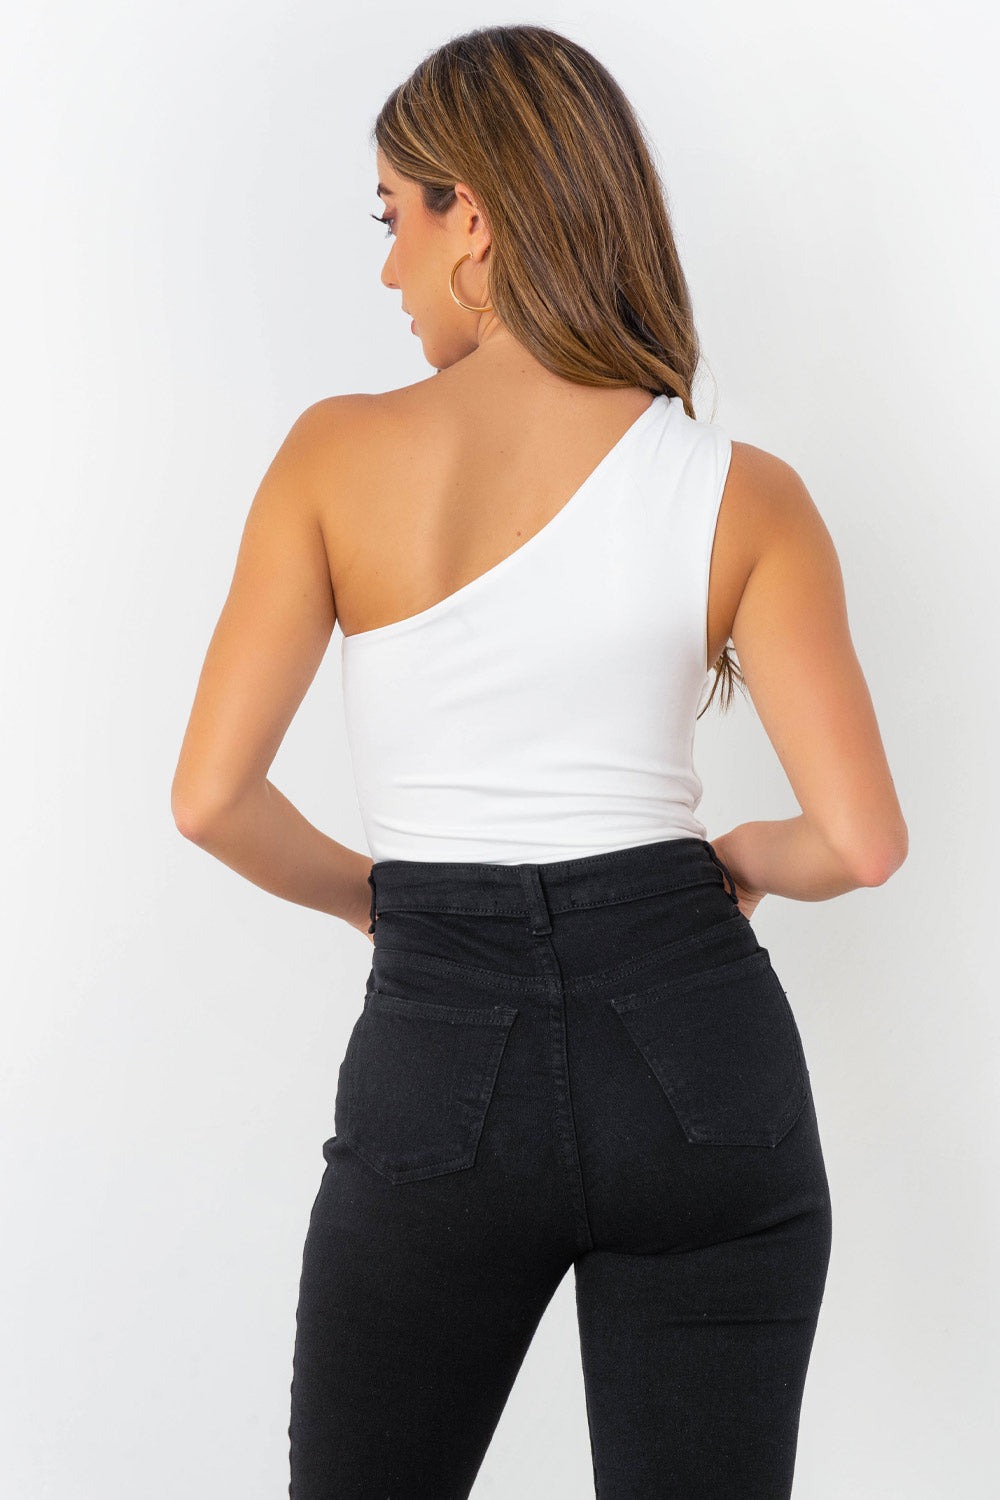 Body asimétrico de un hombro, fit ajustado, cierre inferior con broche de presión, detalles plisados en costado y hombro.